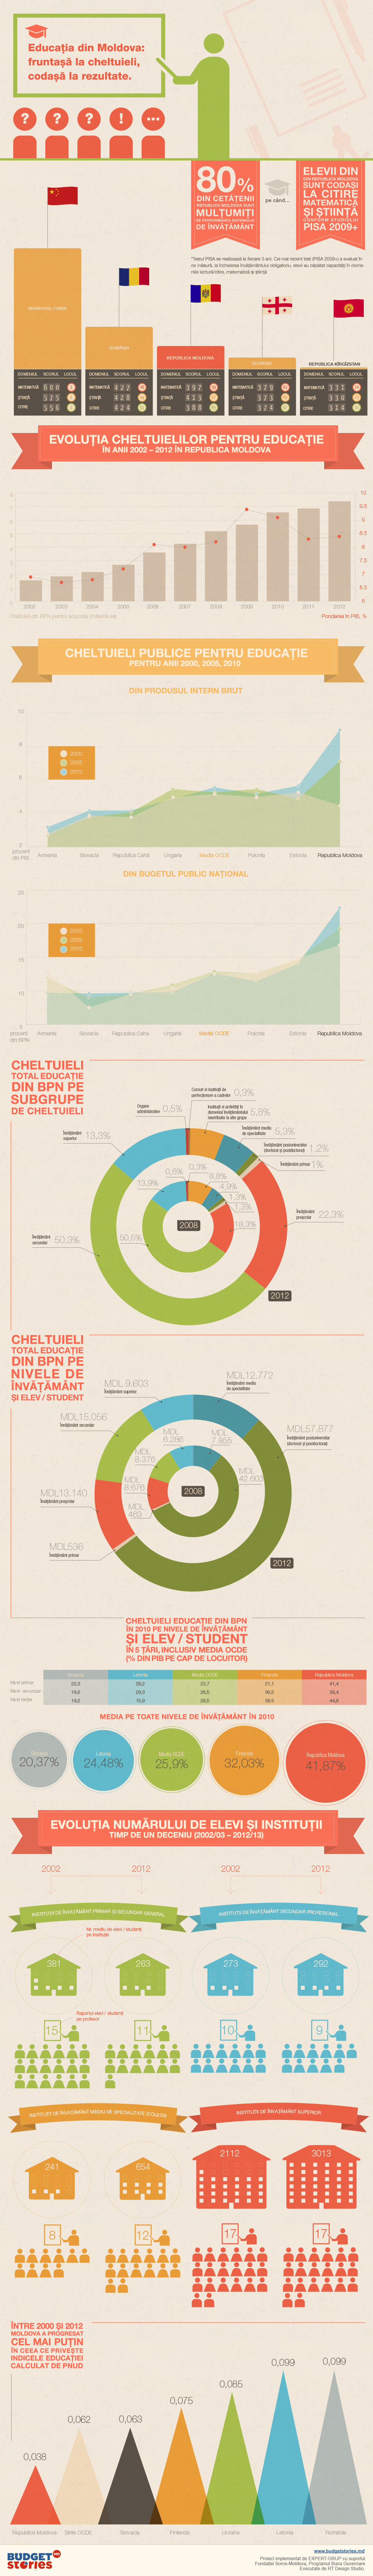 Educatia-in-RM-infographic